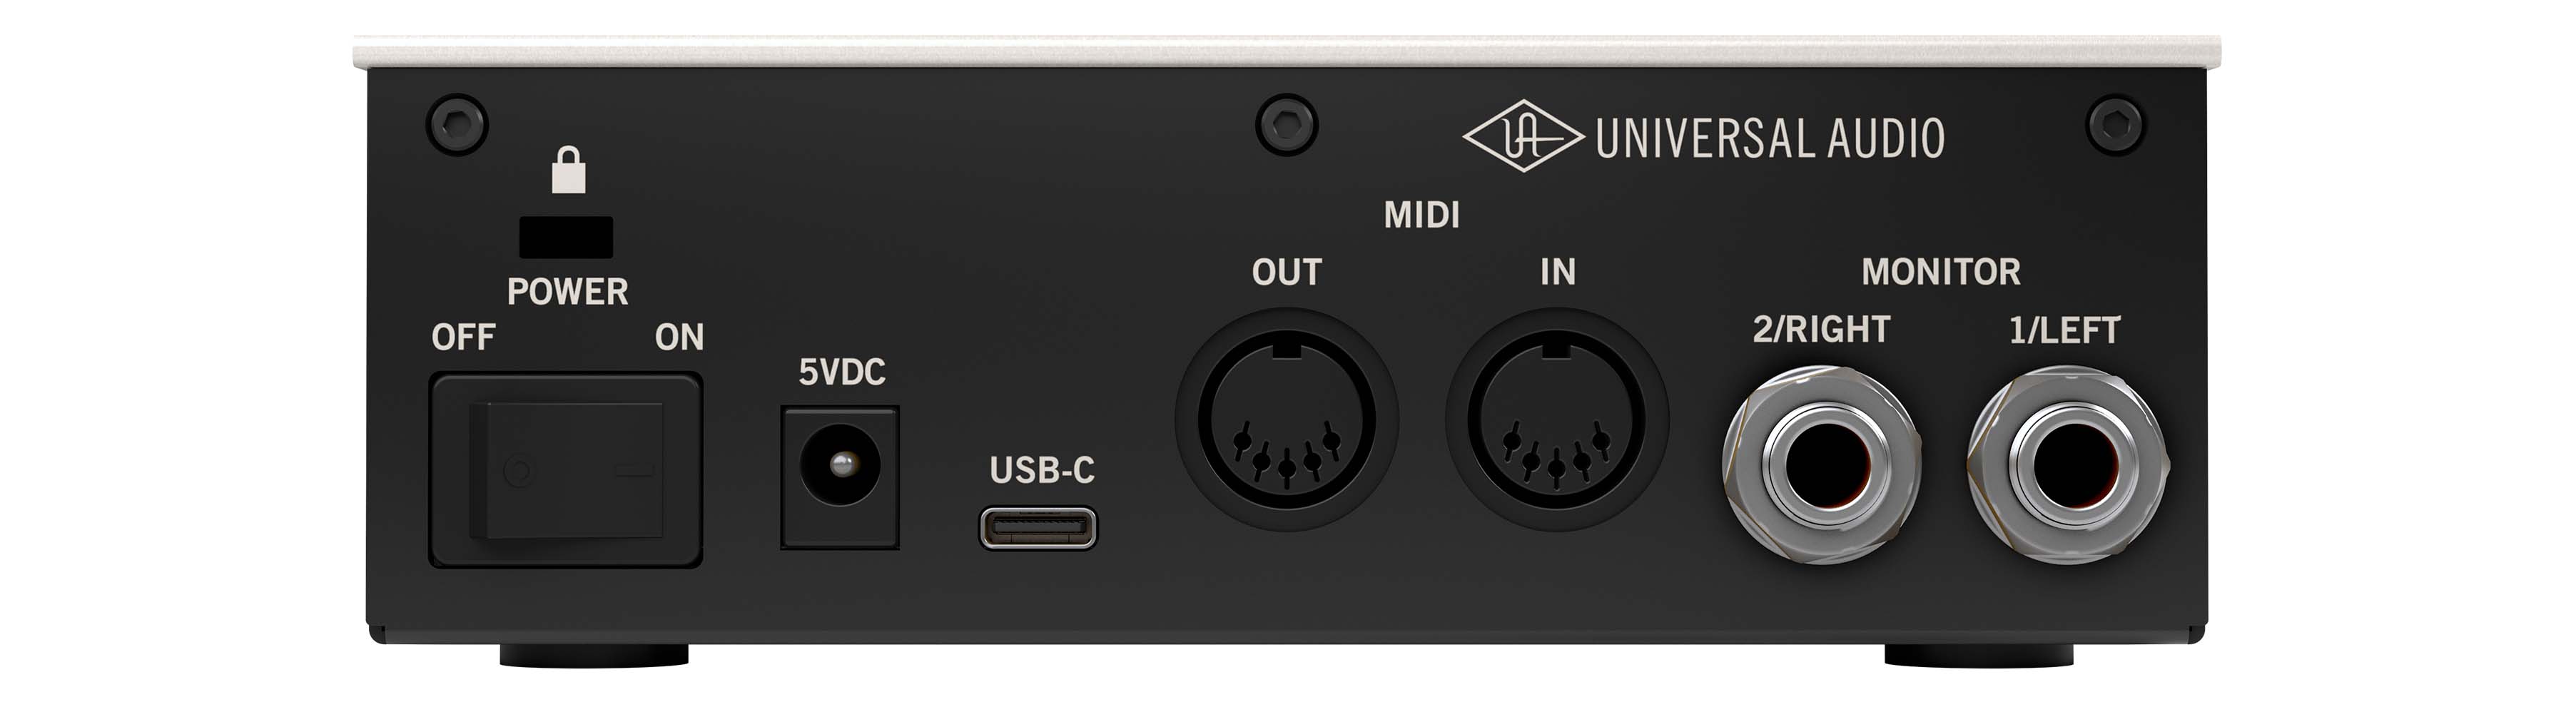 Zoom ZUAC8 USB 3.0 Audio Interface